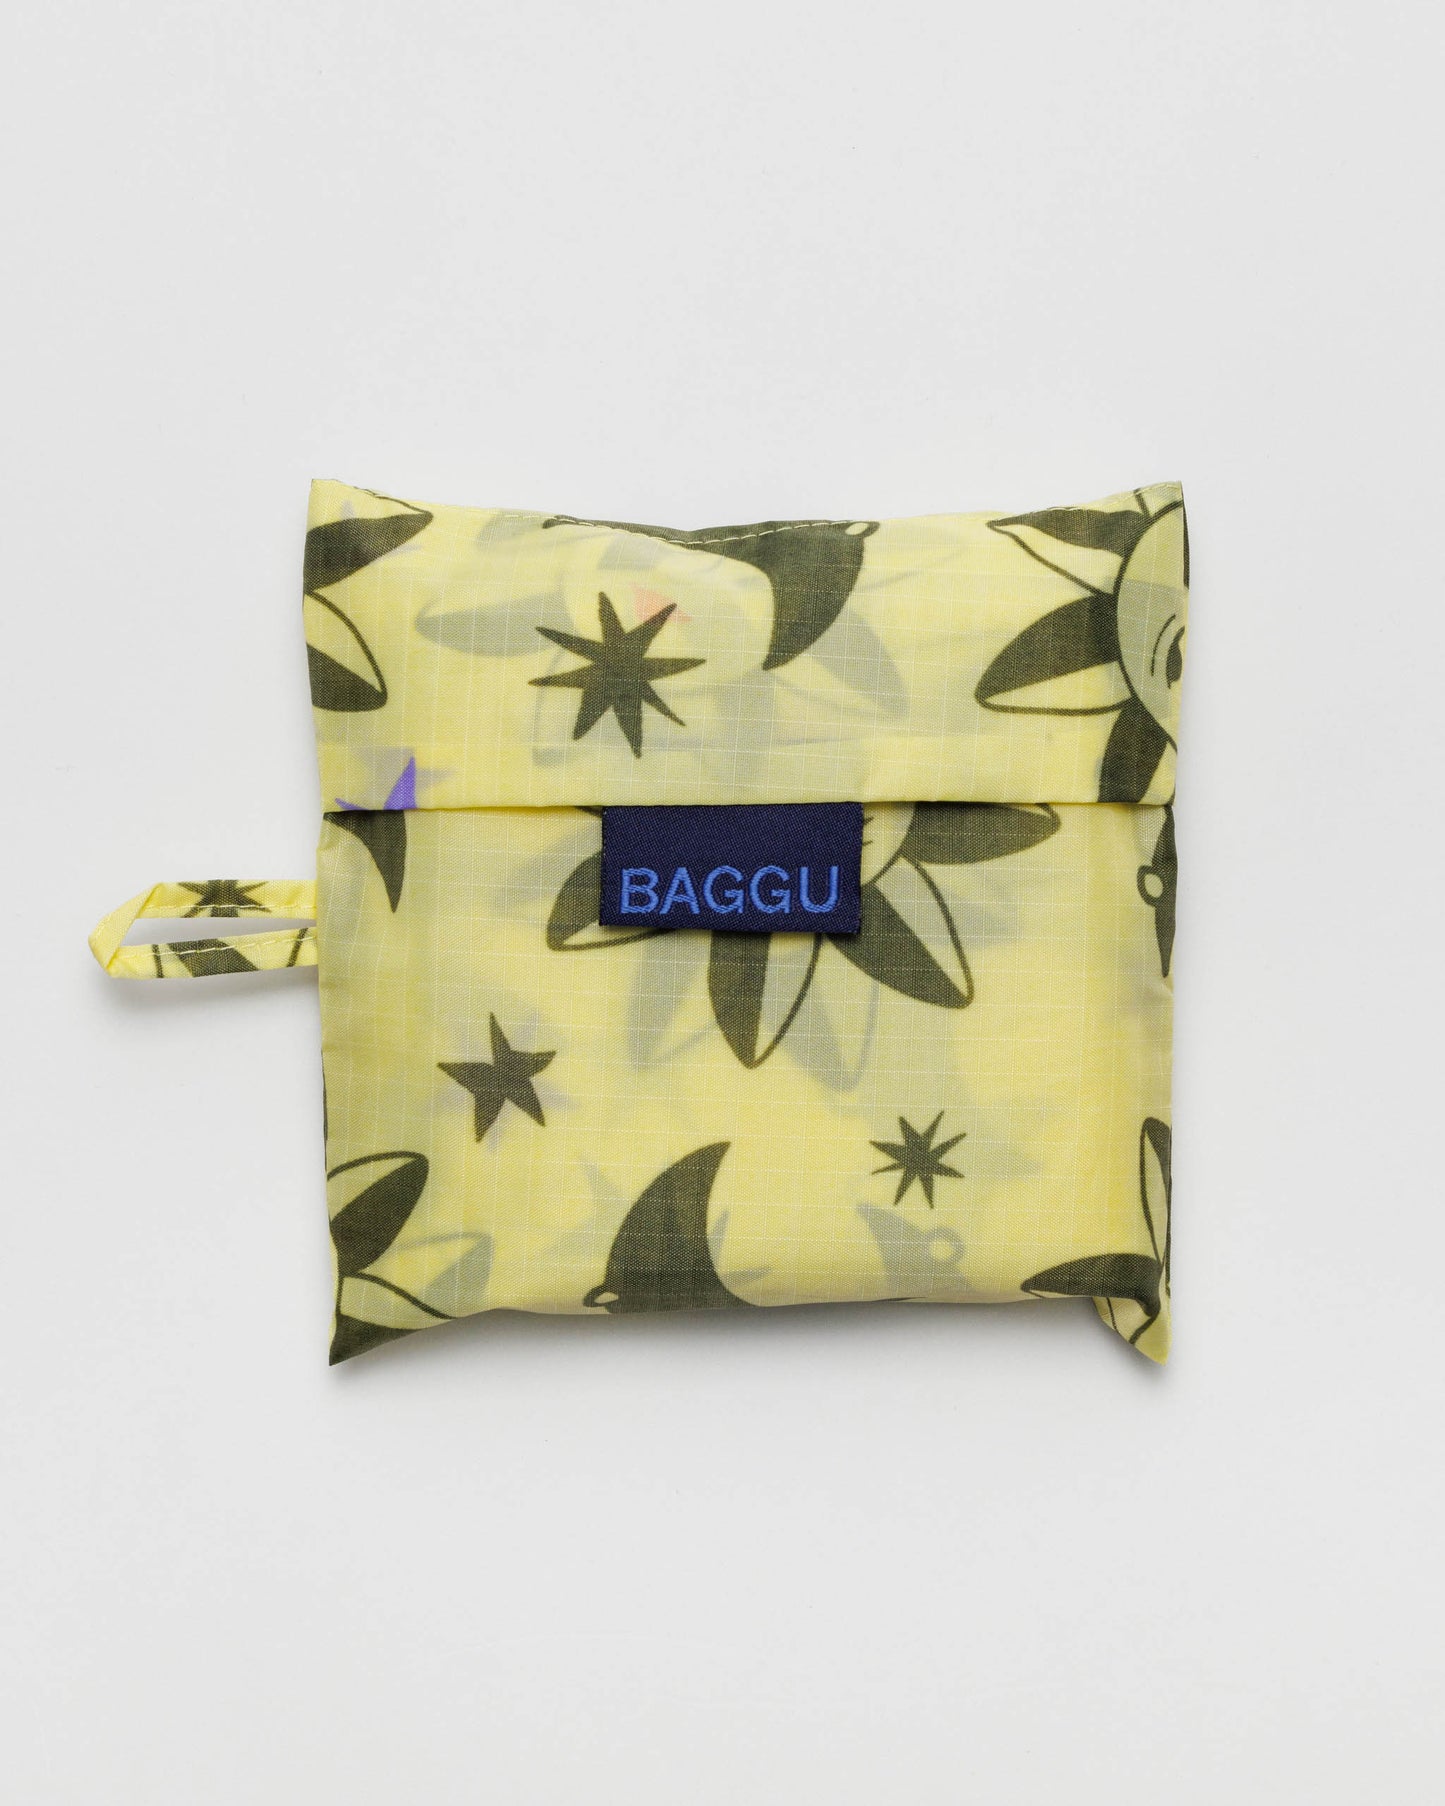 Standard BAGGU Reusable Bag - Sun and Moon Charms | RALLY RALLY Singapore